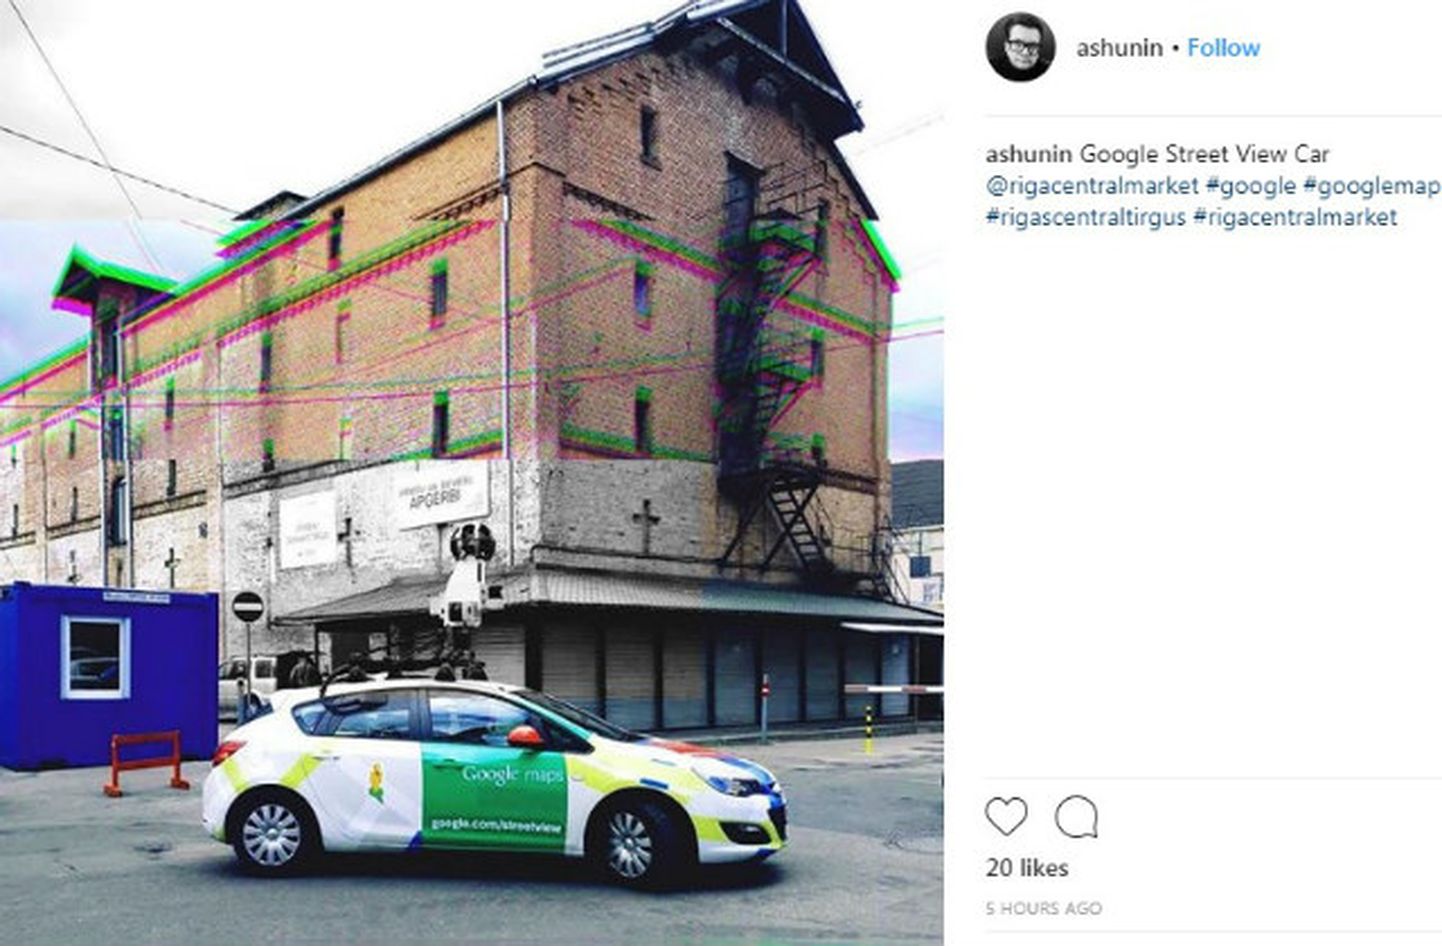 Автомобиль Google Street View был замечен на Рижском центральном рынке